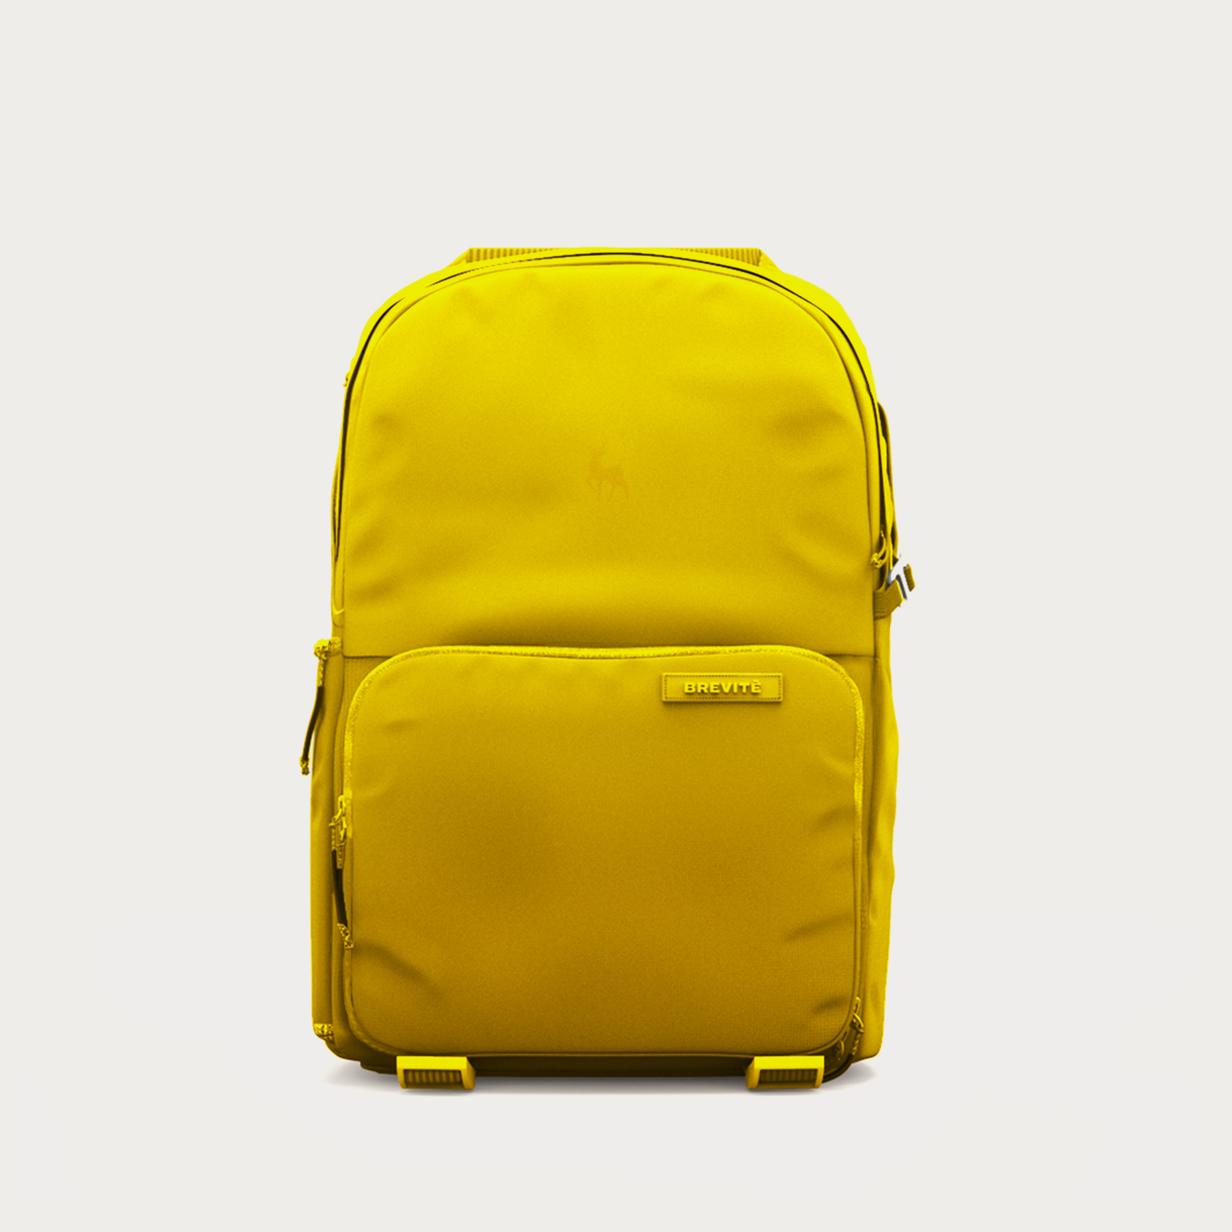 Moment Brevite JPR YLW 001 Jumper Backpack Lemon Yellow 01